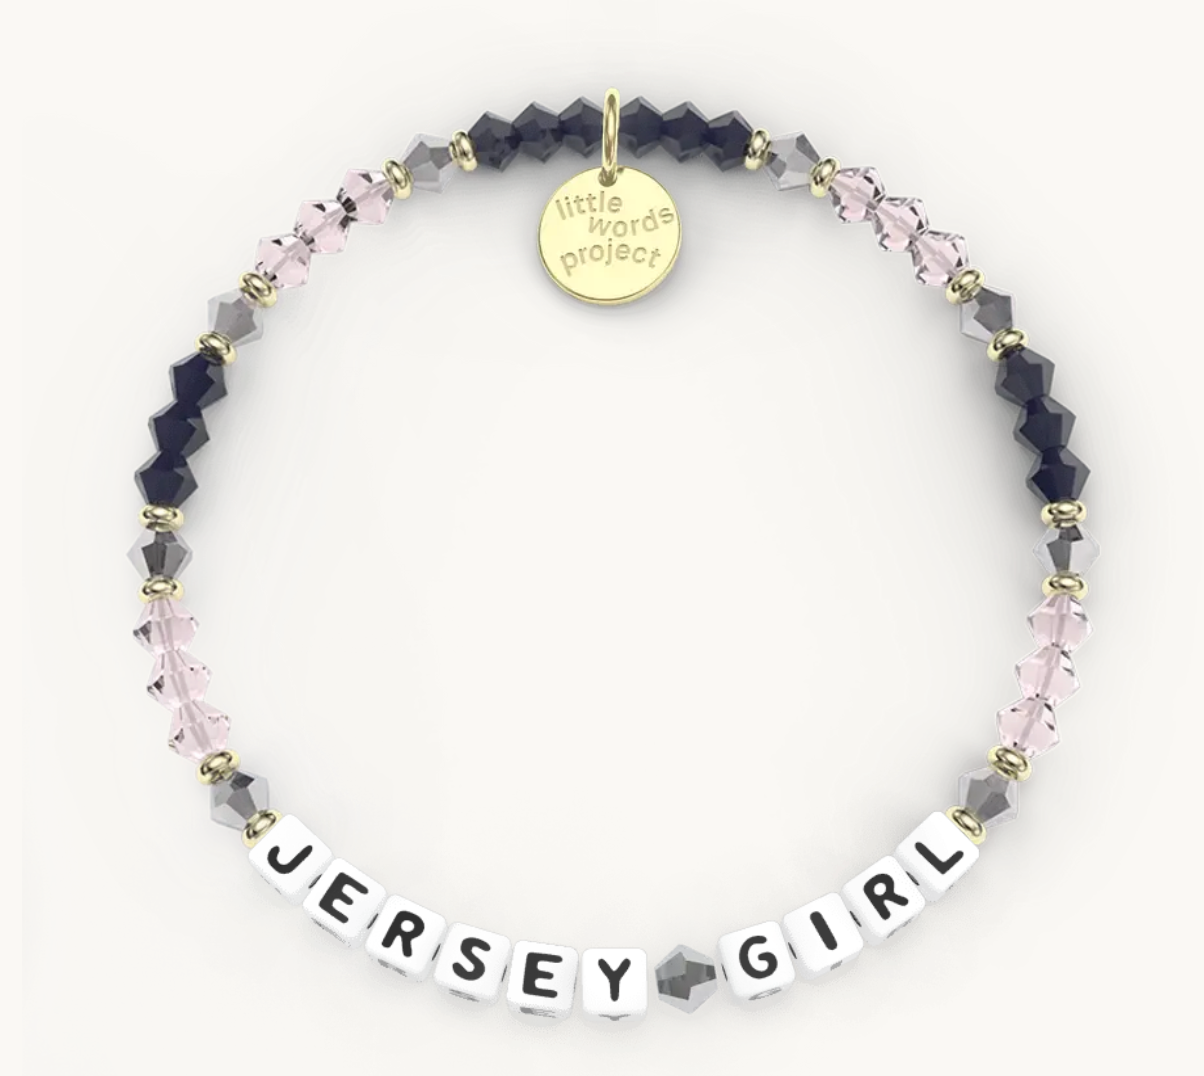 "Jersey Girl" Little Word Project Bracelet